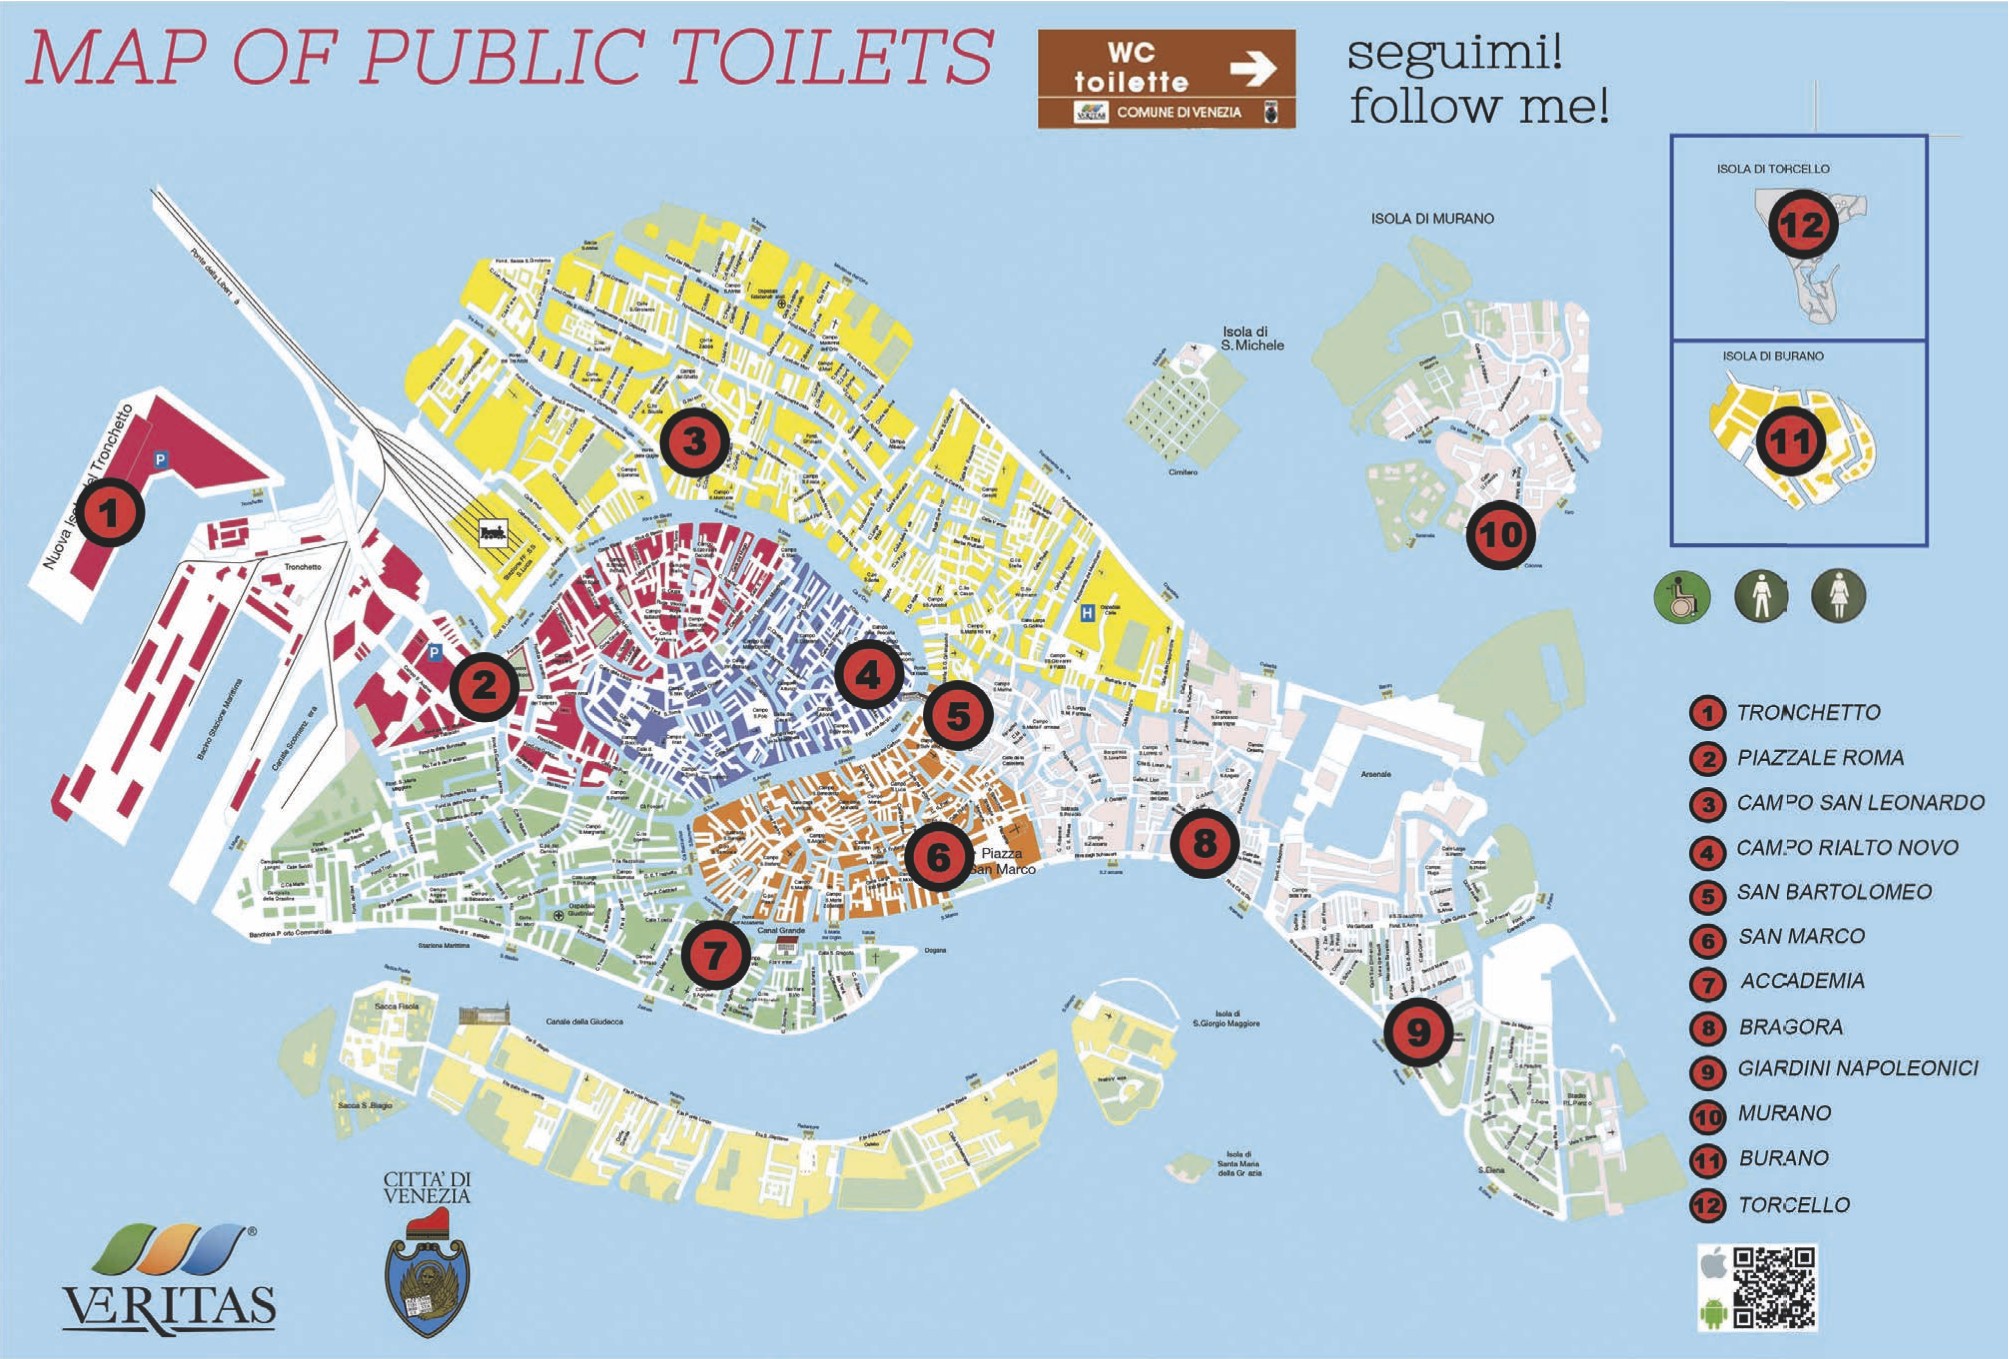 Venice public toilets map